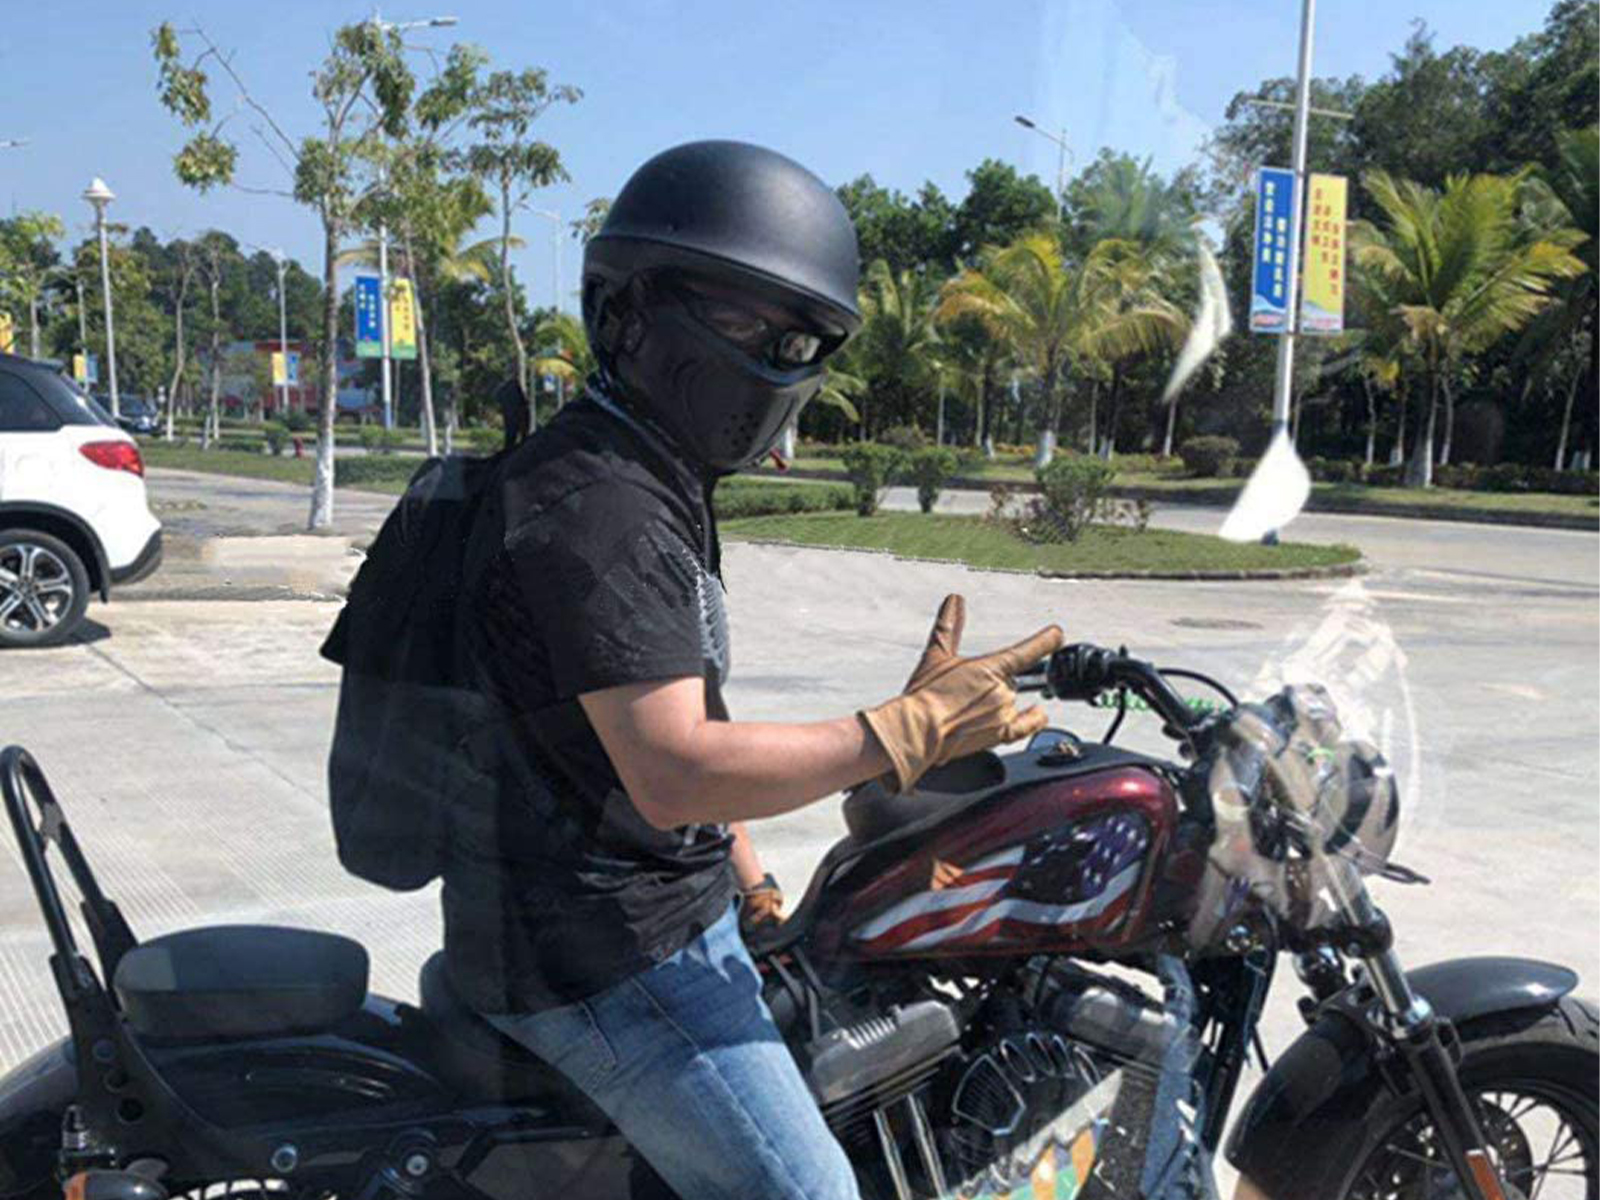 珍しい メーカー正規品 バイクヘルメット バイク ヘルメット 原付 バイク用ヘルメット フェイスマスク 防寒 アライヘルメット ジェットヘルメット マットdot Sg Psc規格品 フルフェイス システムヘルメット 四サイズ S M L Xl 安全 頑丈 アウトレット送料無料 Www